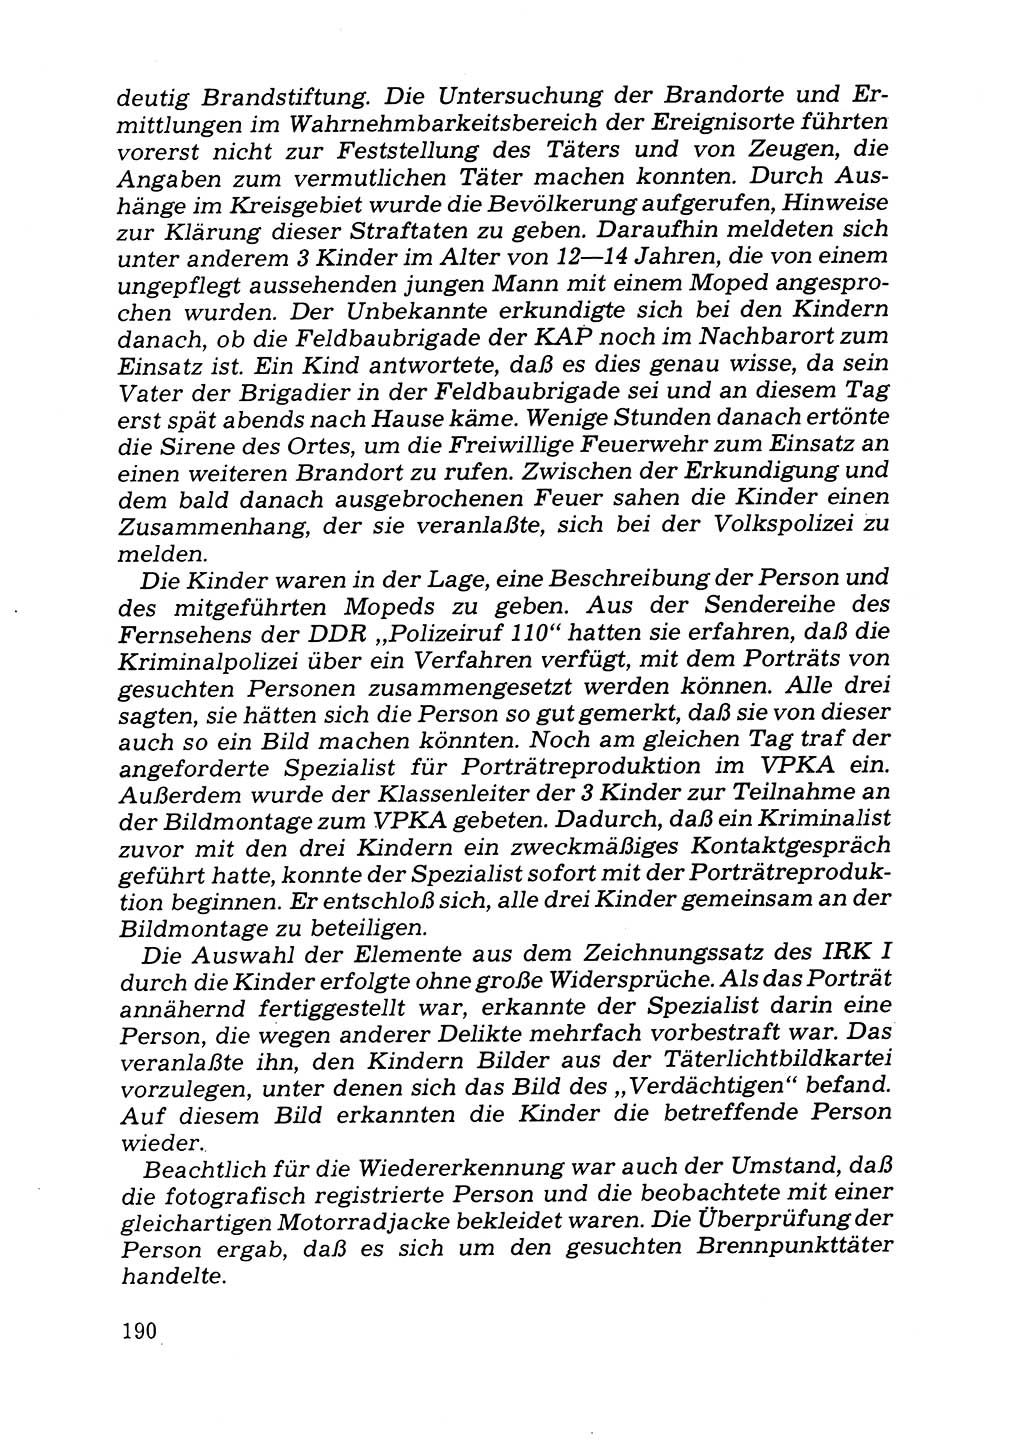 Das subjektive Porträt [Deutsche Demokratische Republik (DDR)] 1981, Seite 190 (Subj. Port. DDR 1981, S. 190)